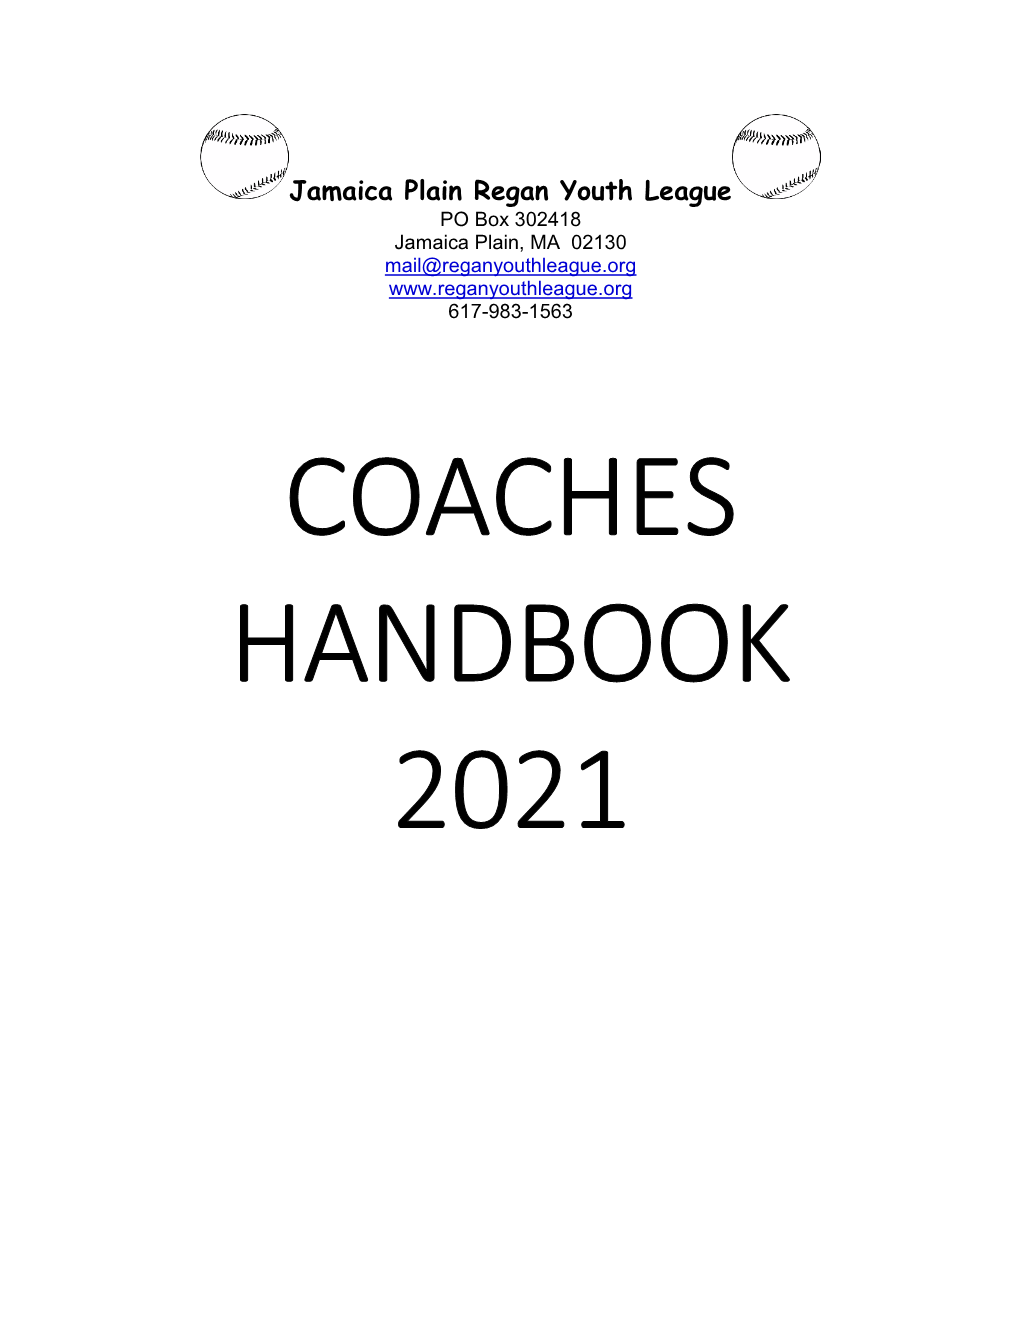 Coaches Handbook 2021